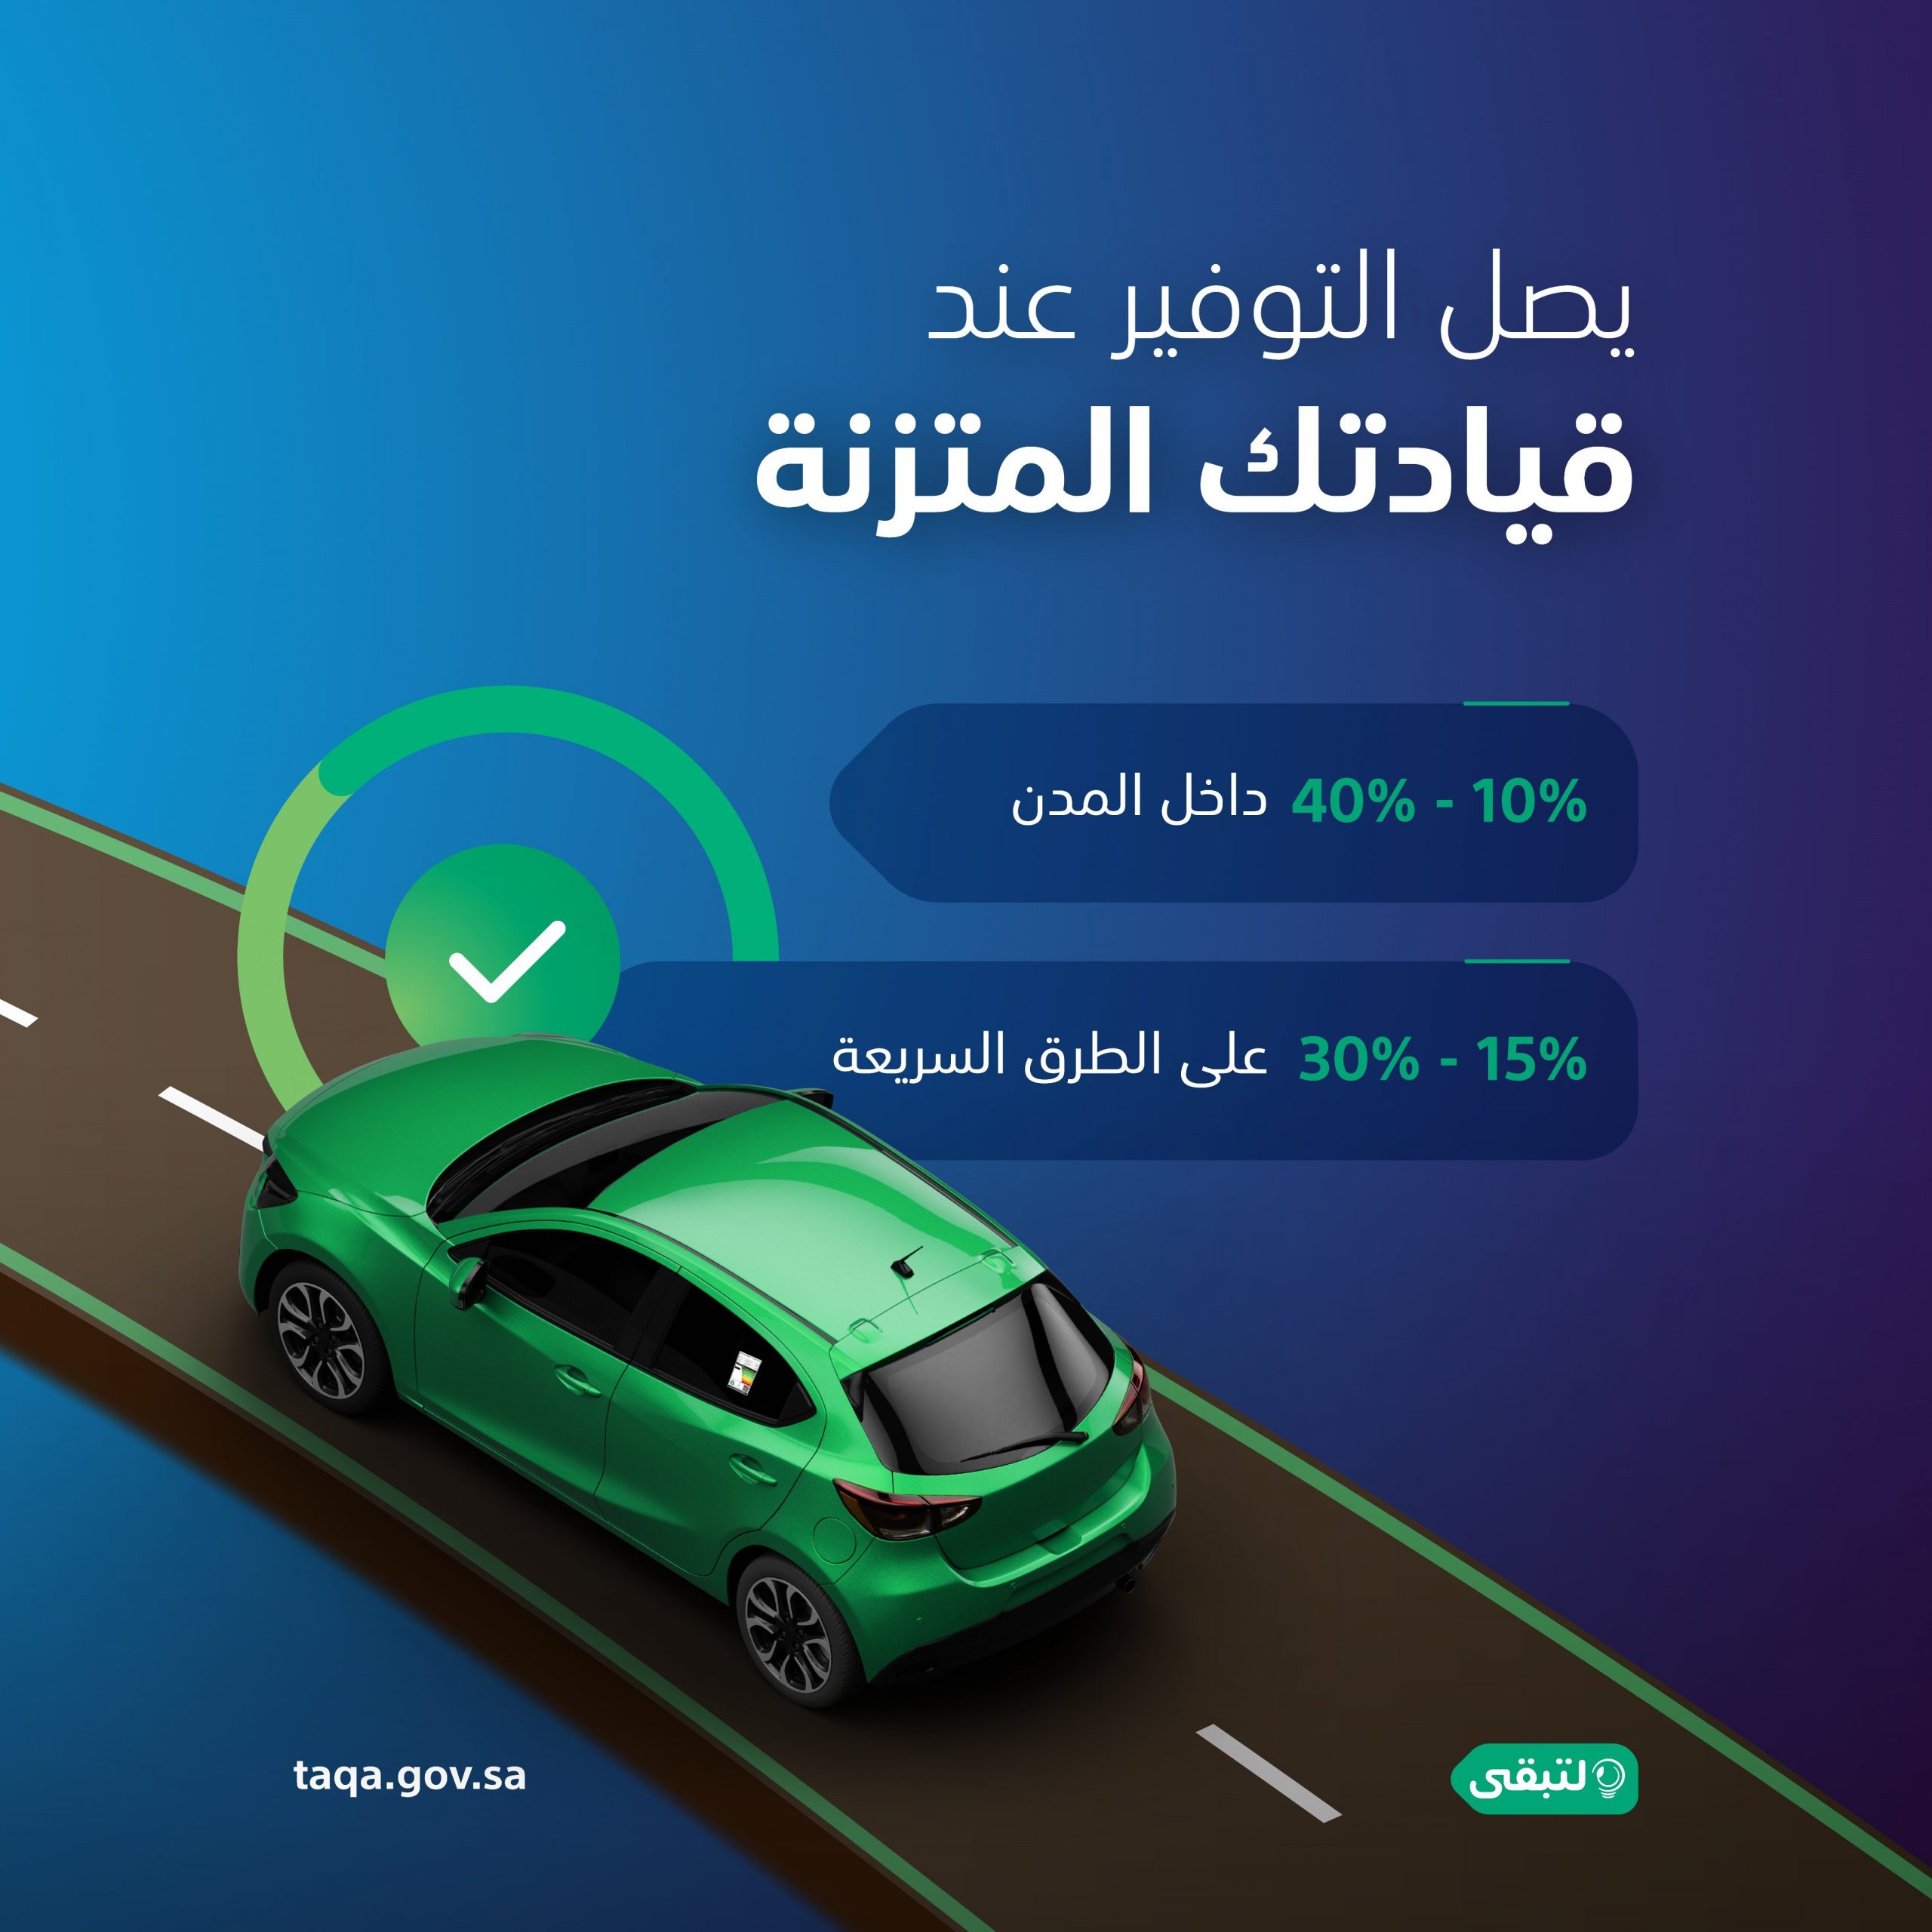 "لتبقى": القيادة المتزنة توفر 40% من استهلاك وقود مركبتك 8